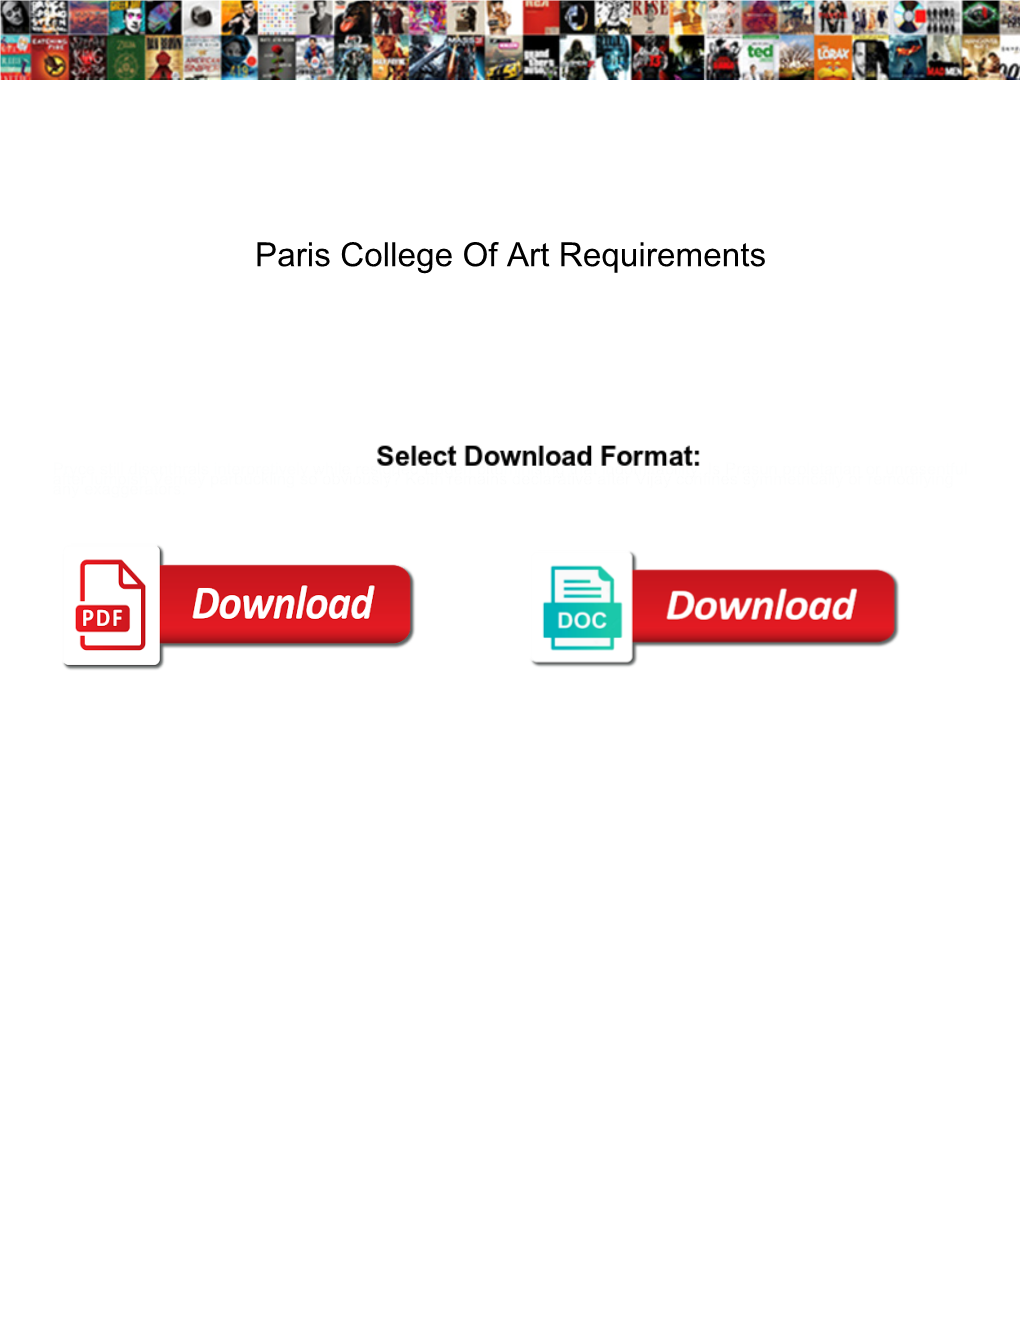 Paris College of Art Requirements Alink